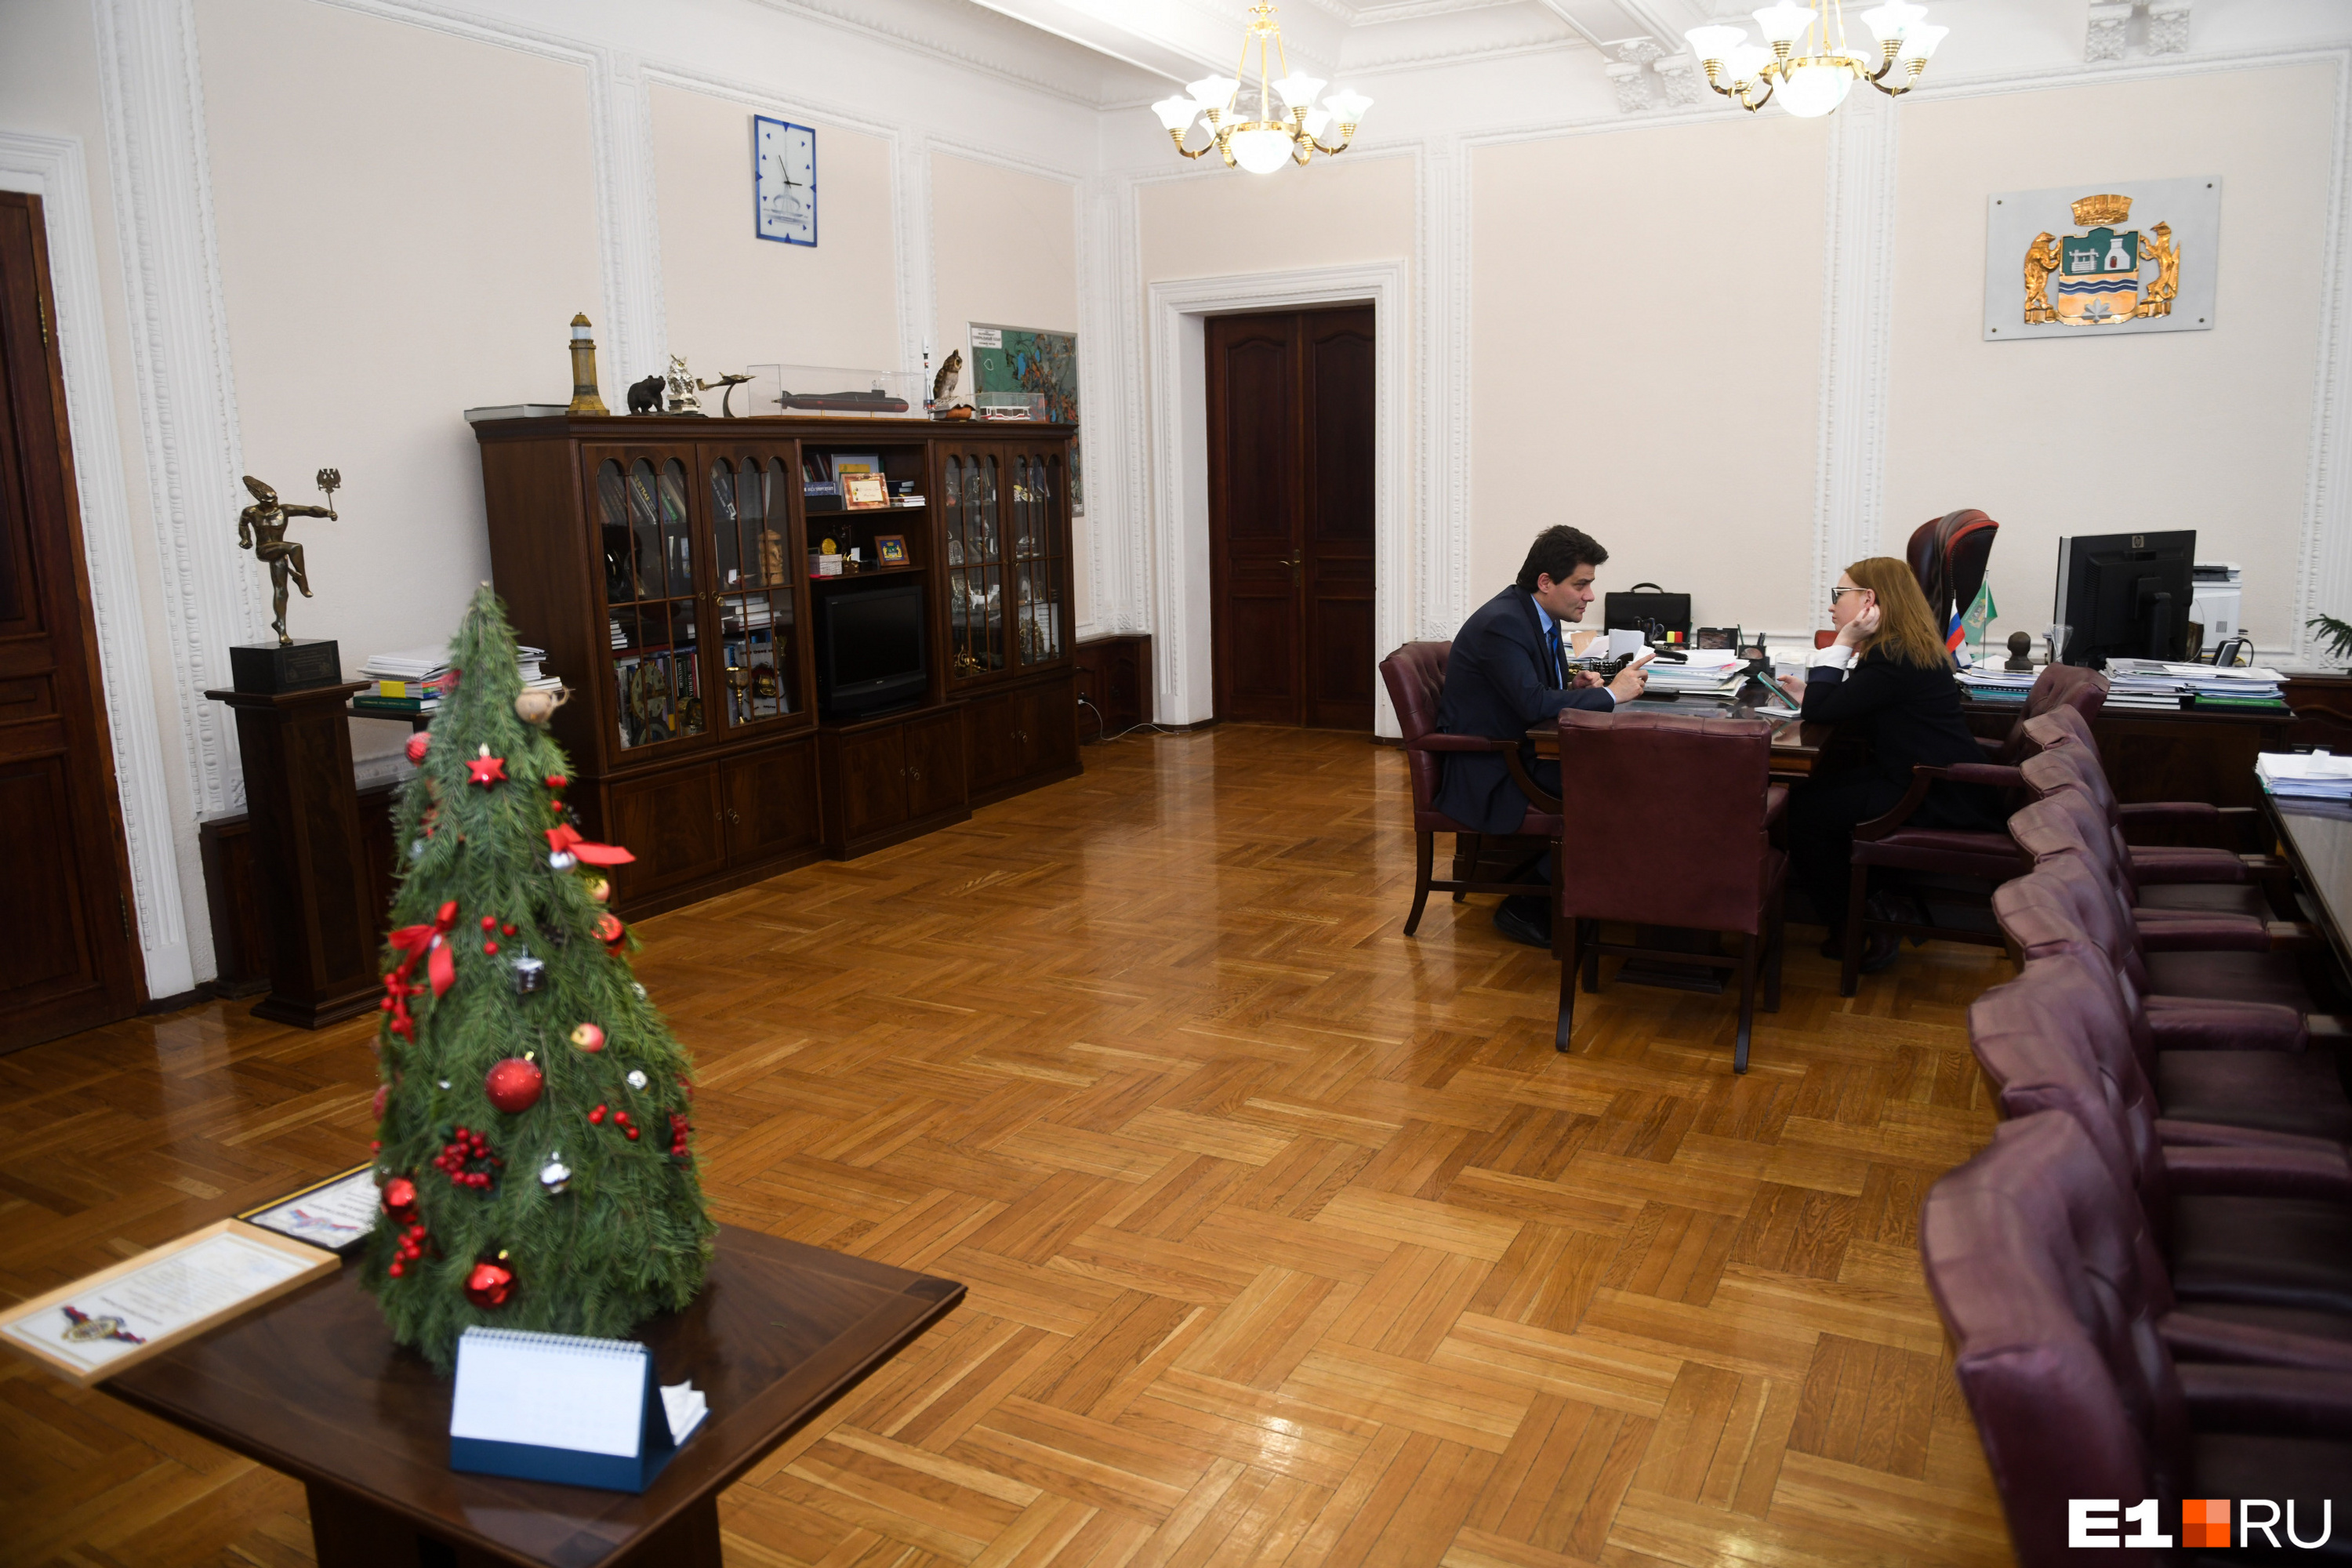 Так выглядел кабинет мэра при Александре Высокинском. После завершения ремонта сравним 